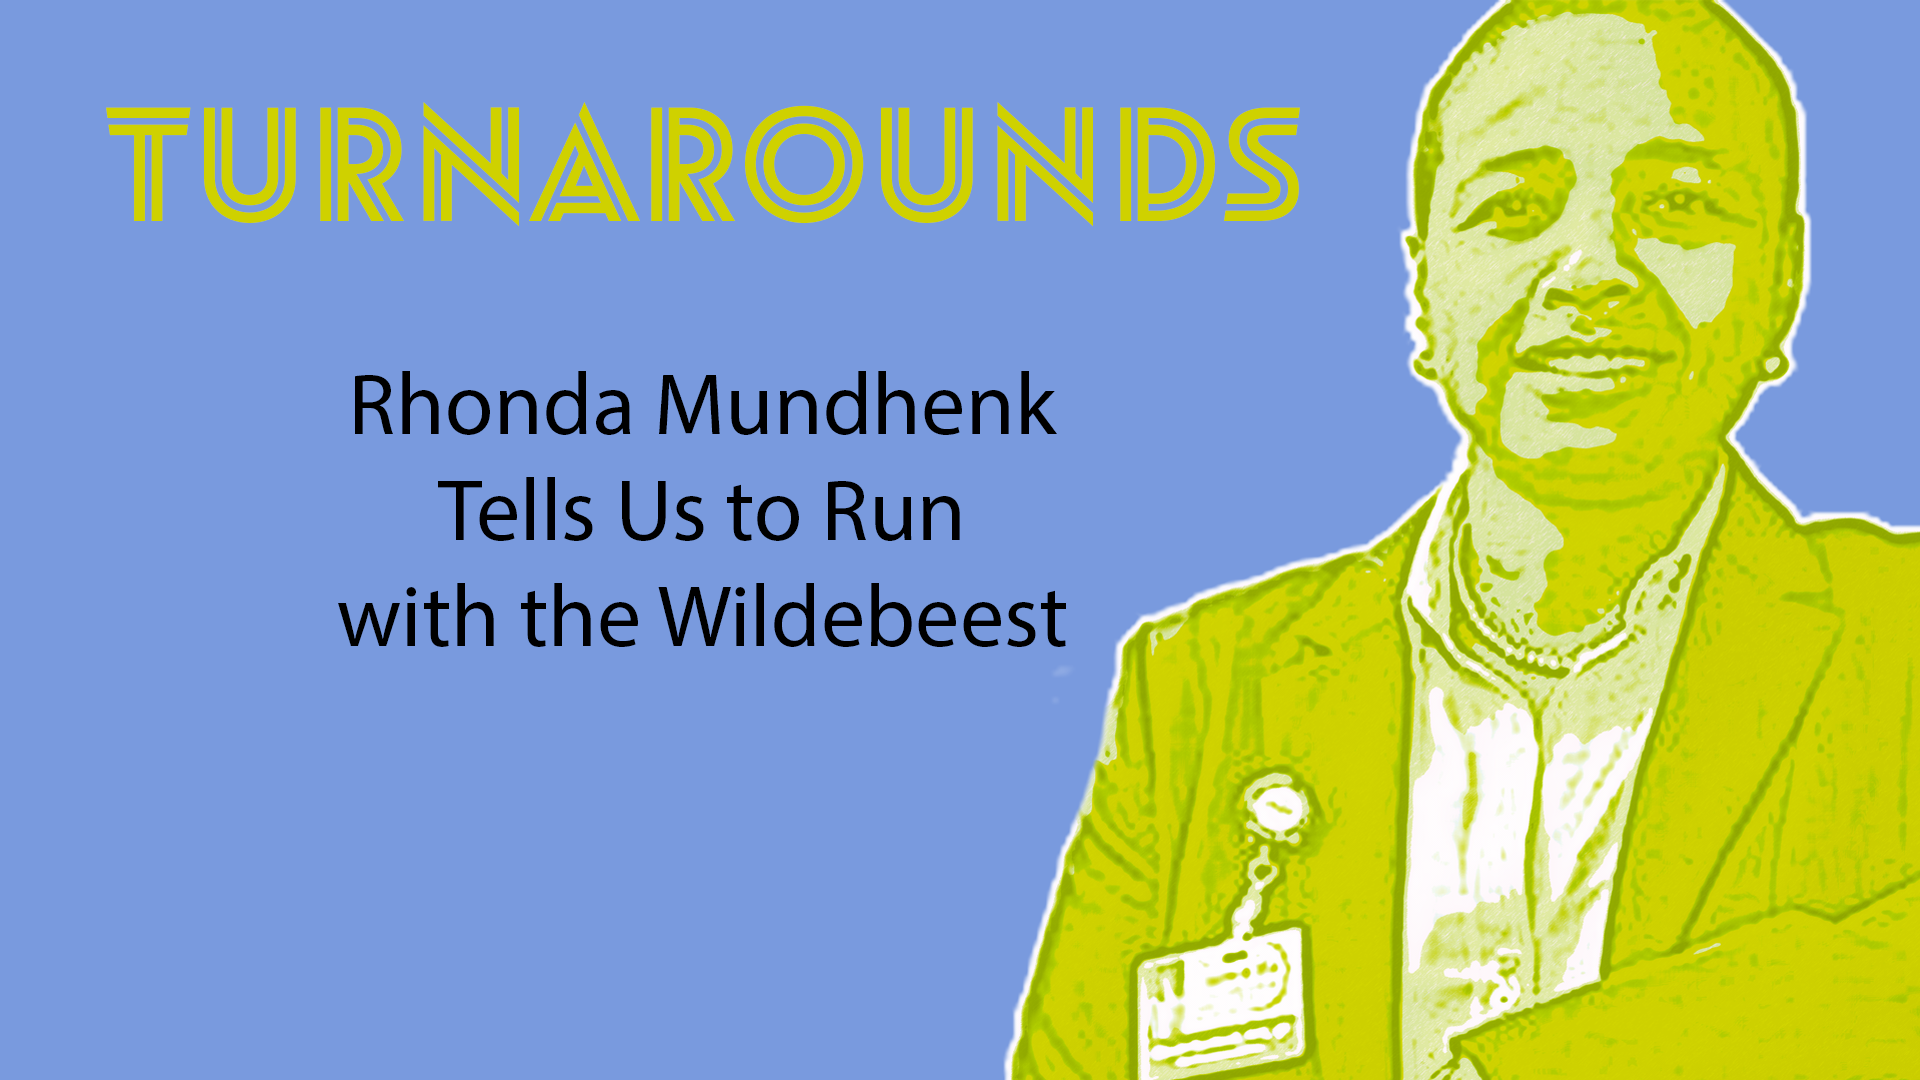 Turnarounds: Rhonda Mundhenk tells us to run with the wildebeest